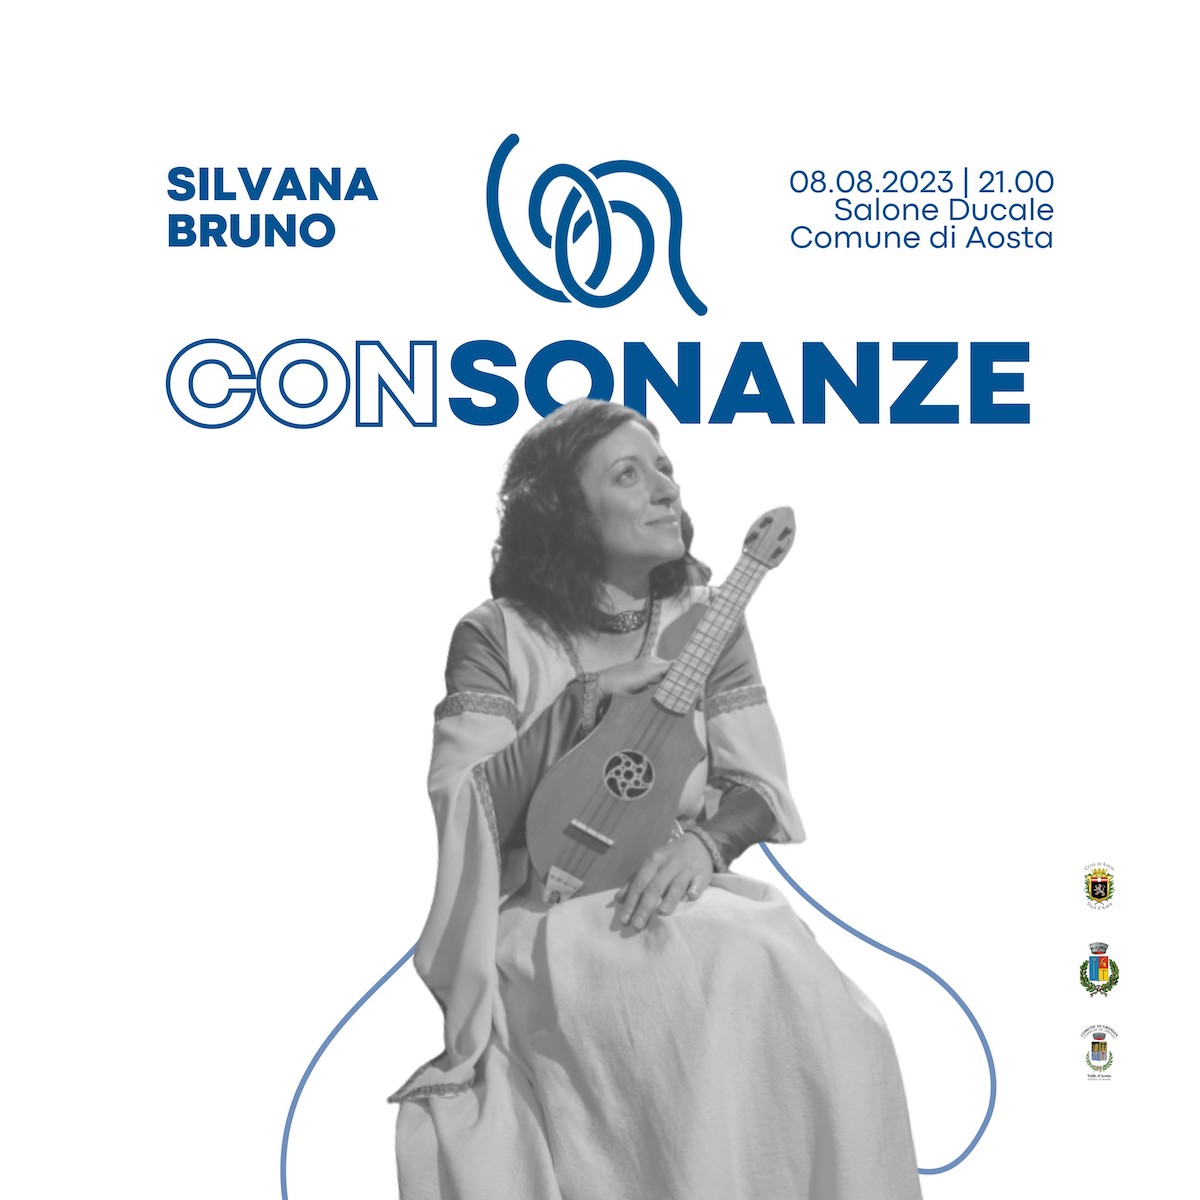 Consonanze - Silvana Bruno